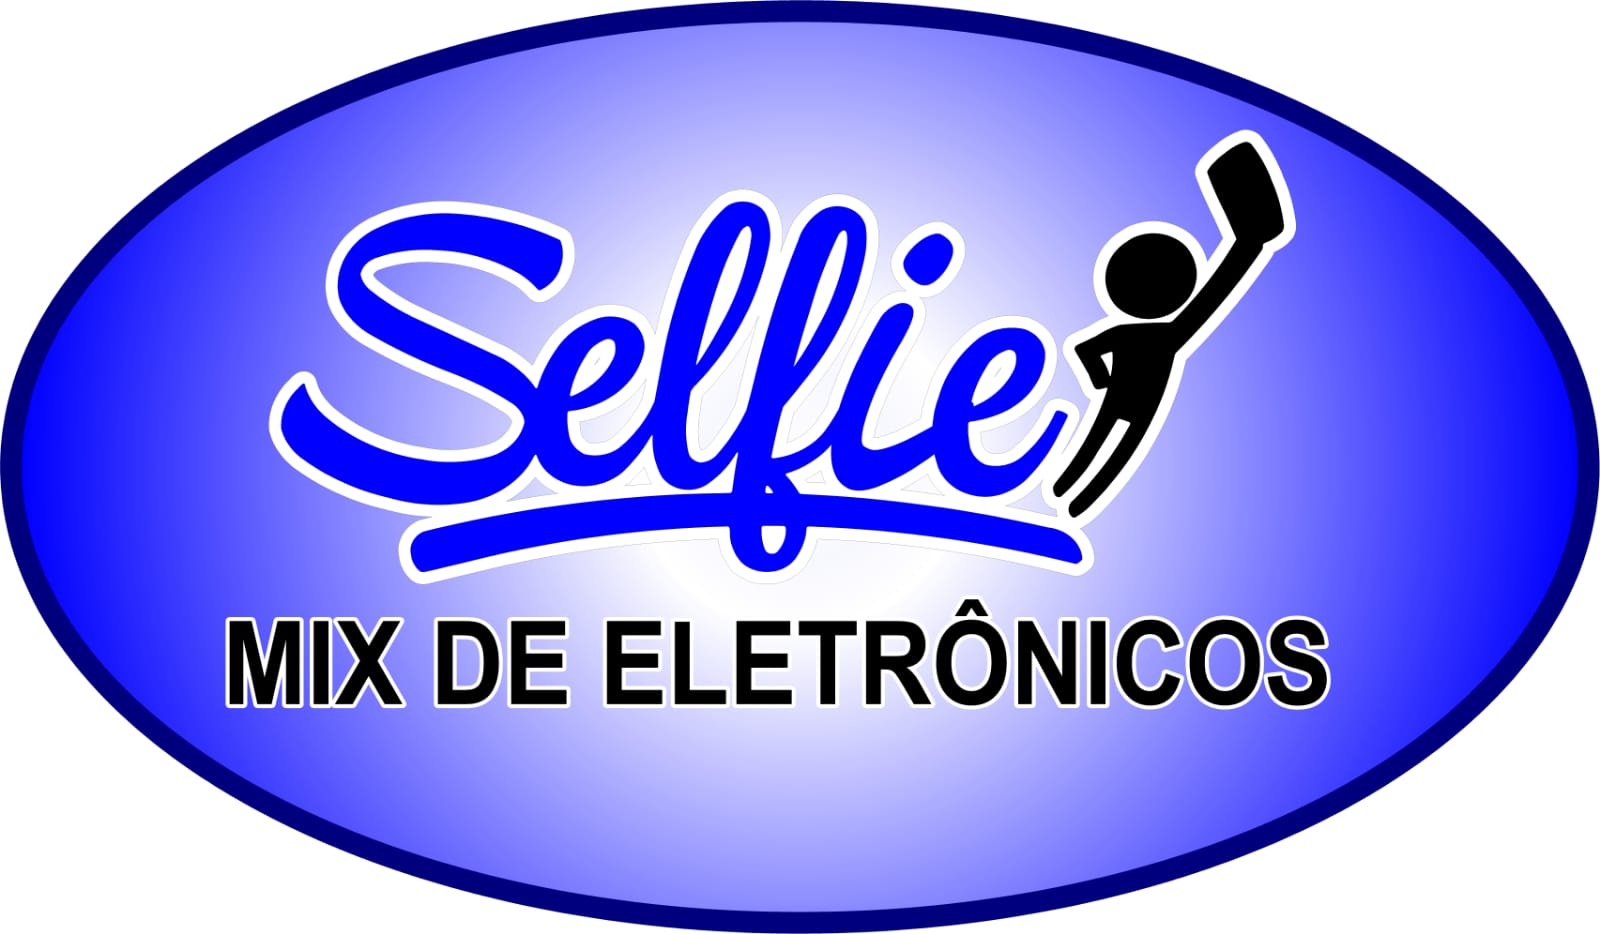 Logo Selfie Mix de Eletrônicos